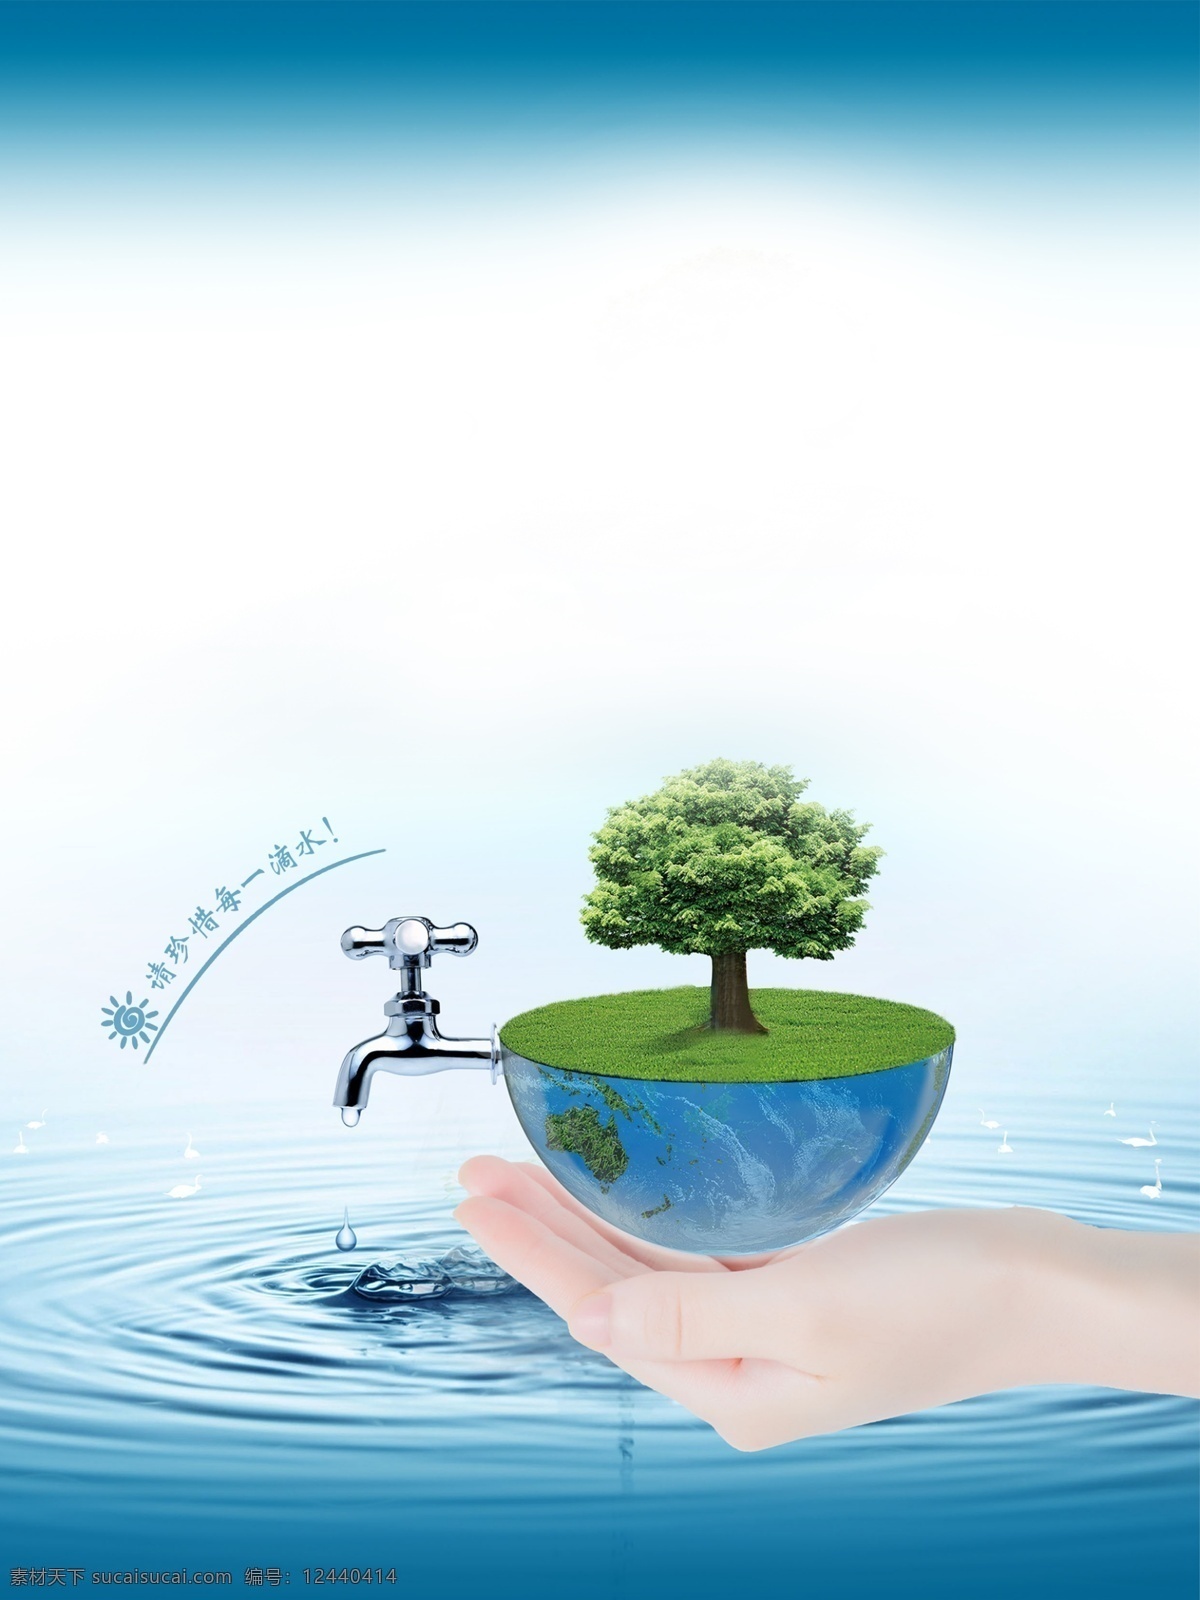 保护 地球 珍惜 水资源 广告 背景 保护地球背景 广告背景 蓝色背景 通用背景 水源背景